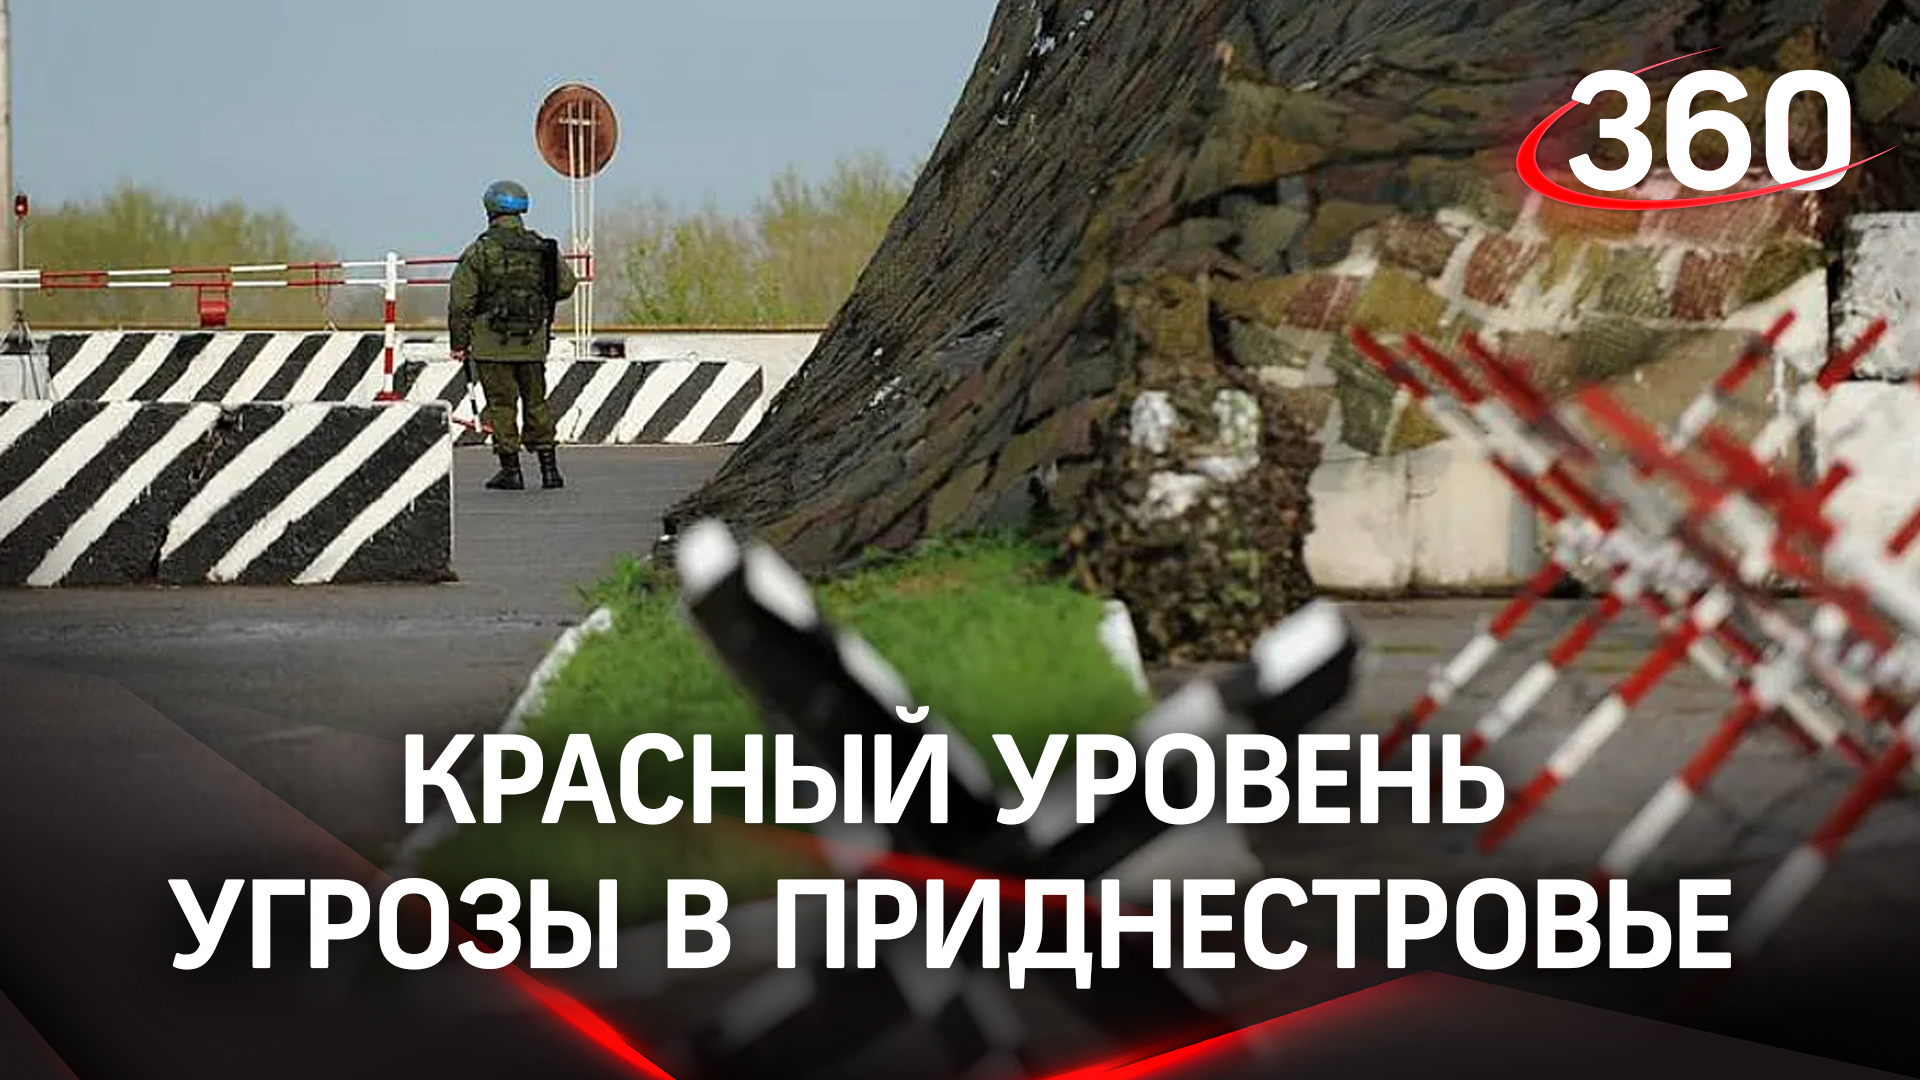 Красный уровень угрозы в Приднестровье. Кто может стоять за обострением в регионе?